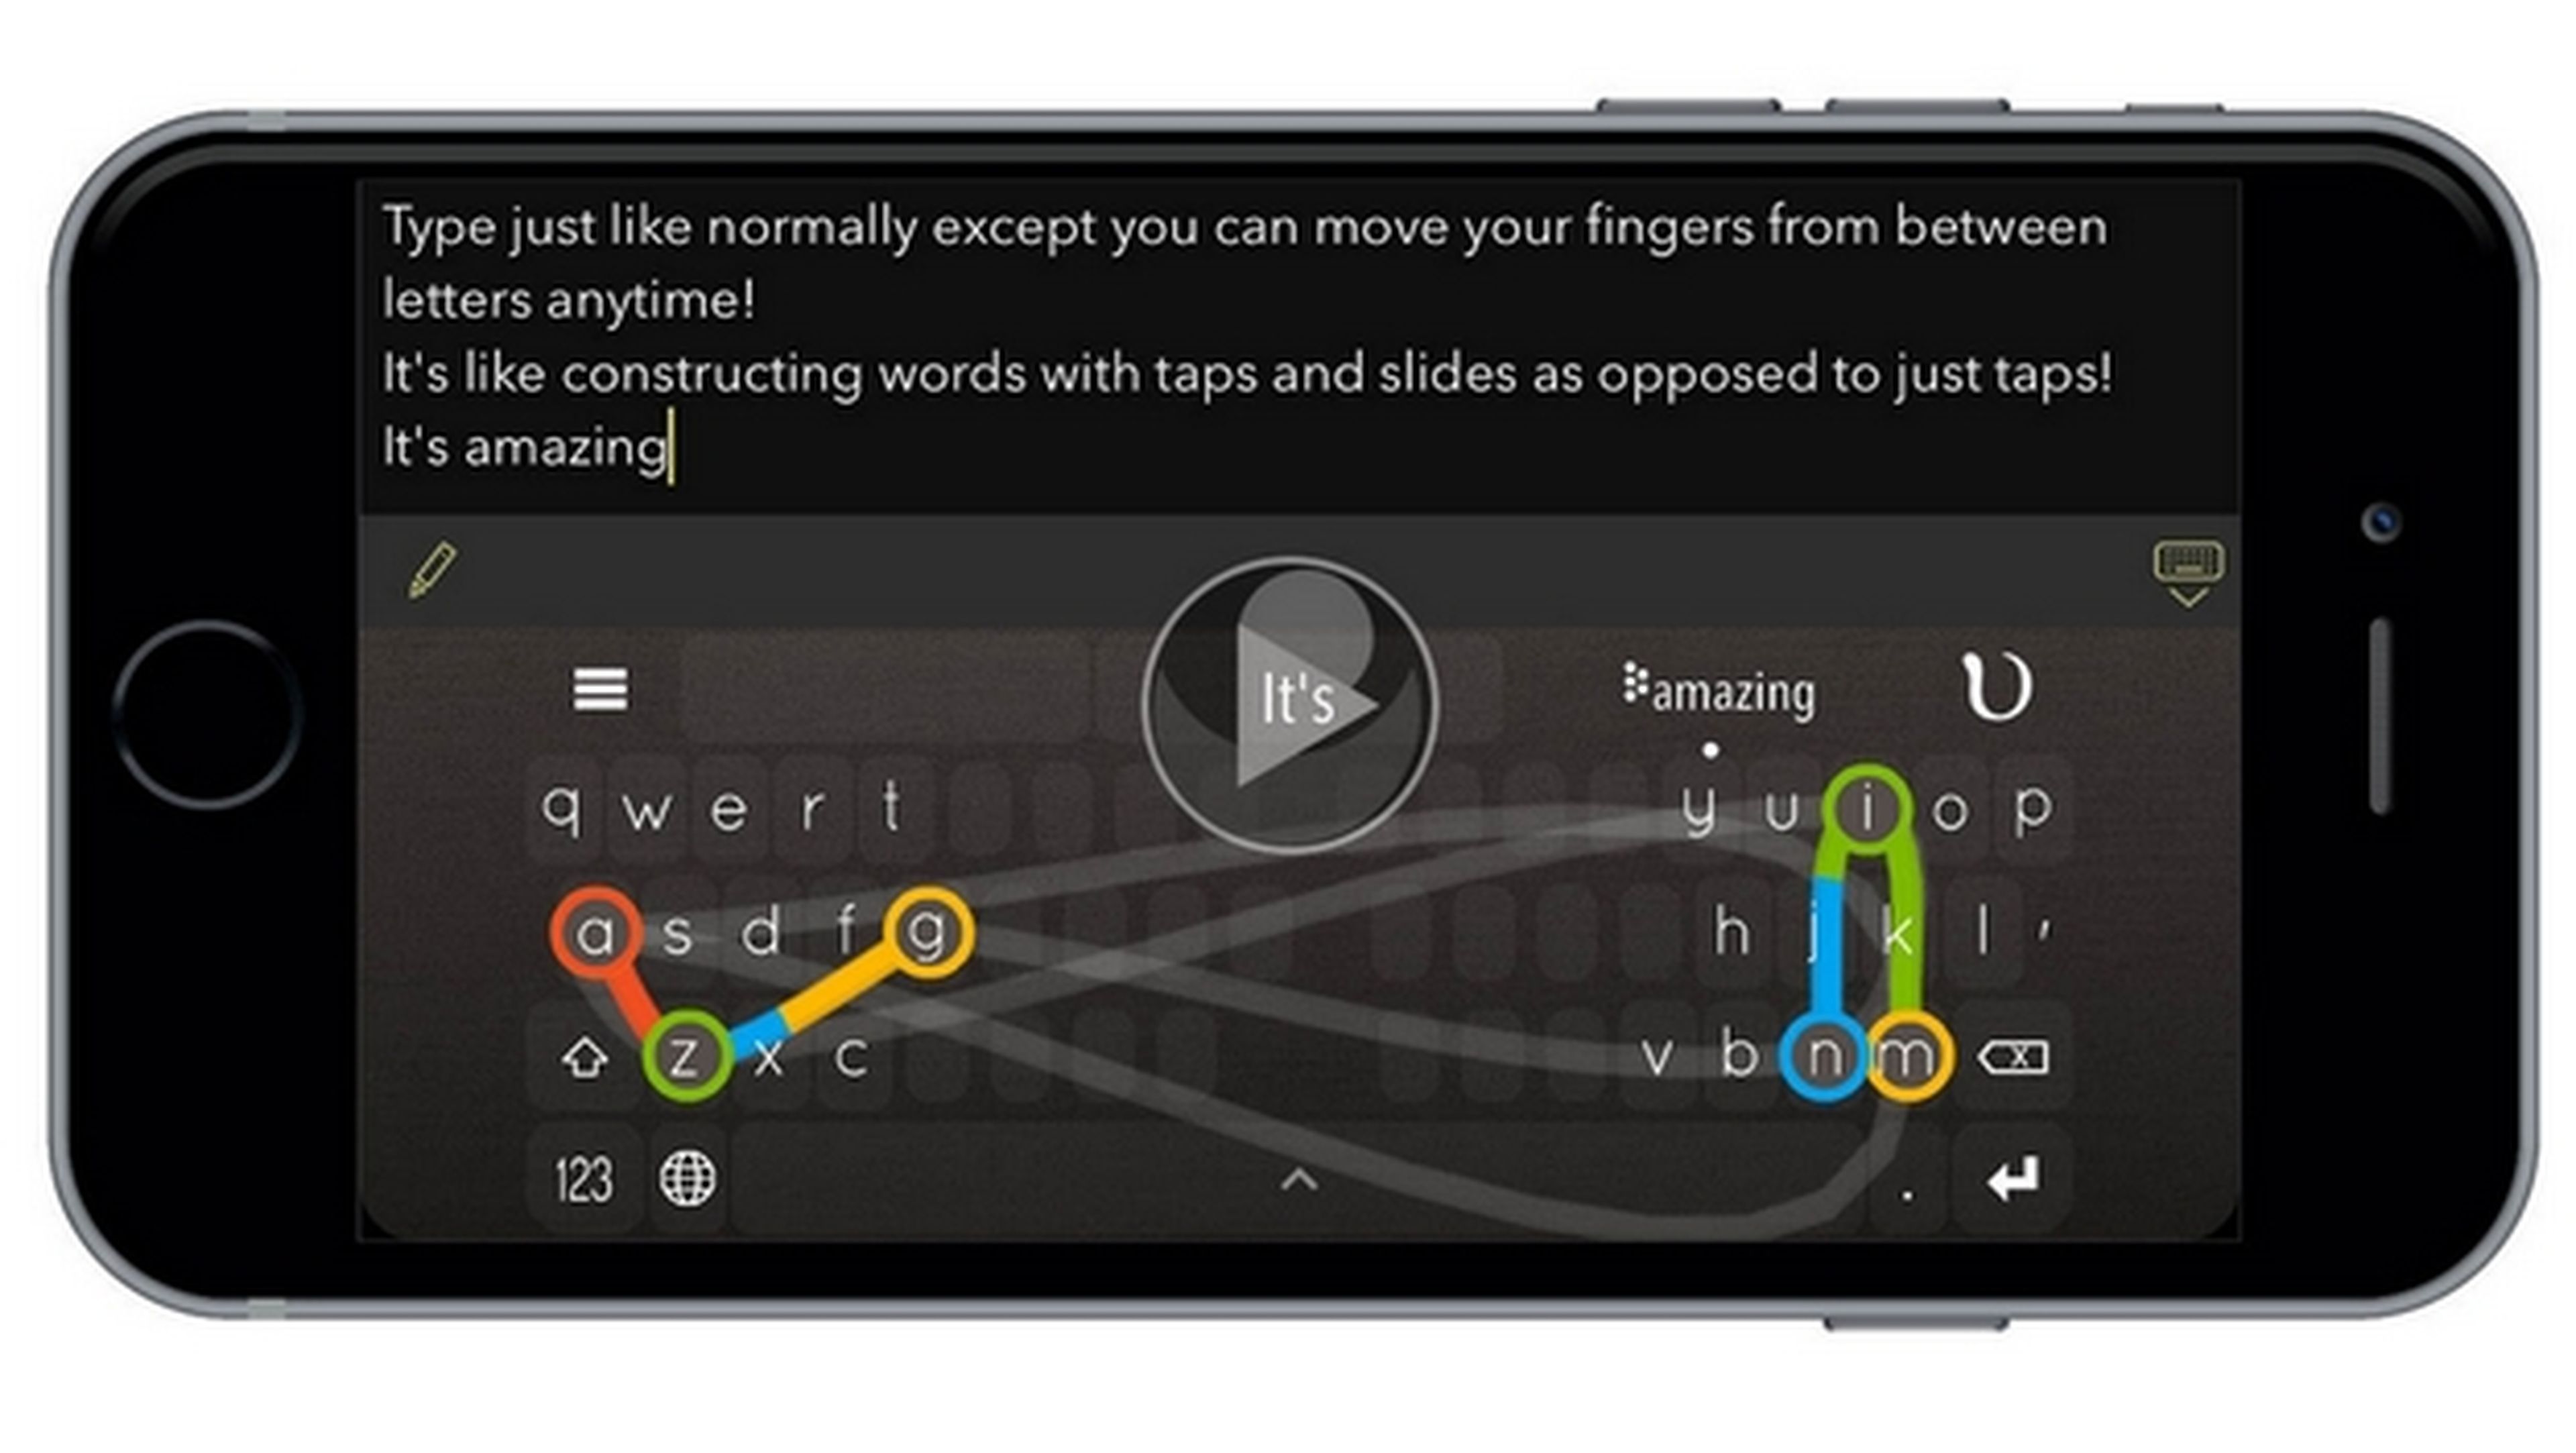 Teclea 130 palabras por minuto en tu móvil con el teclado virtual NinType para iPhone y iPad.